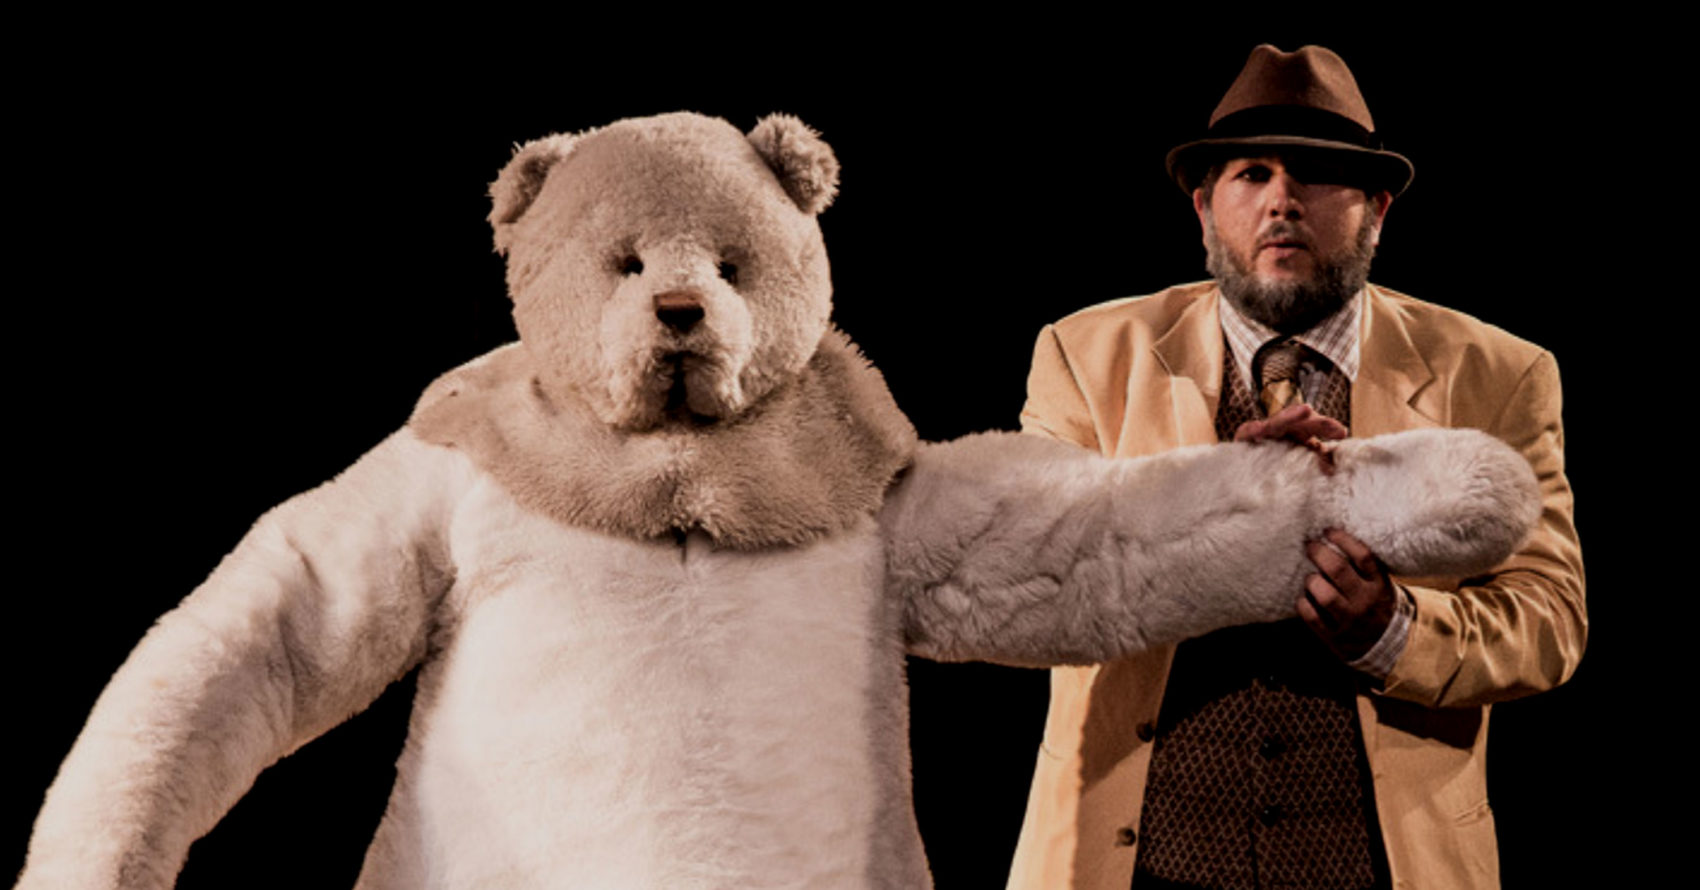 comédien avec un ours en peluche taille humaine